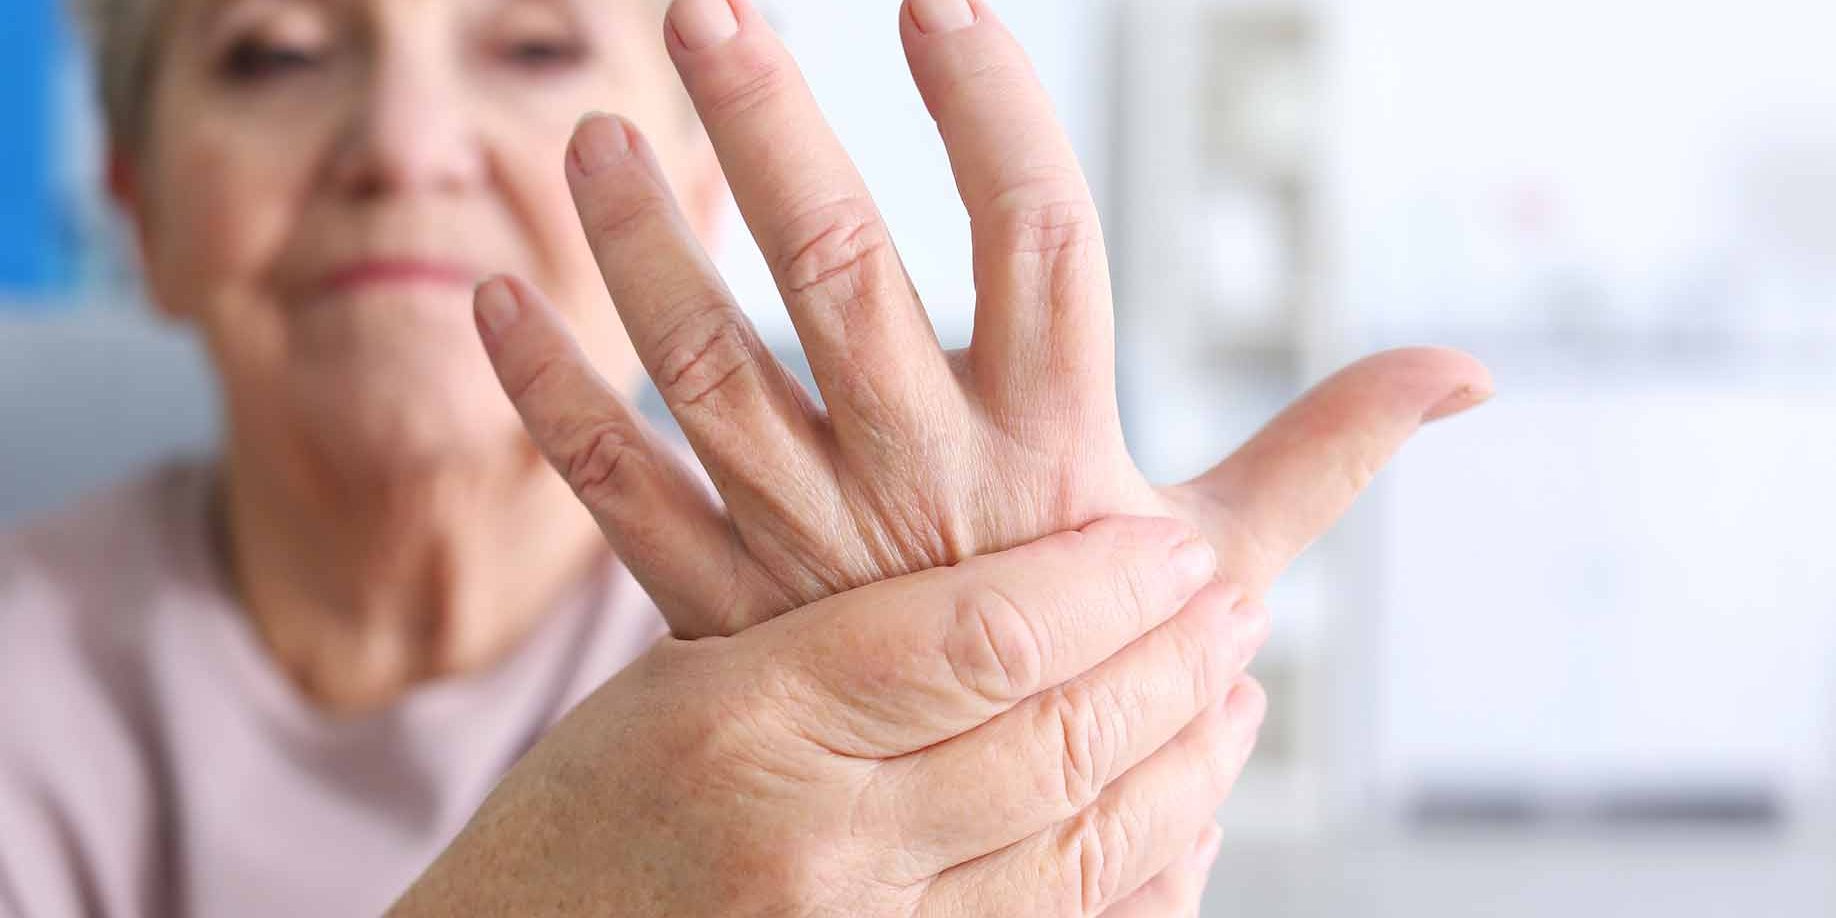 skausmas peties sąnario rankos skauda sąnarį nuo gydymo pirštu